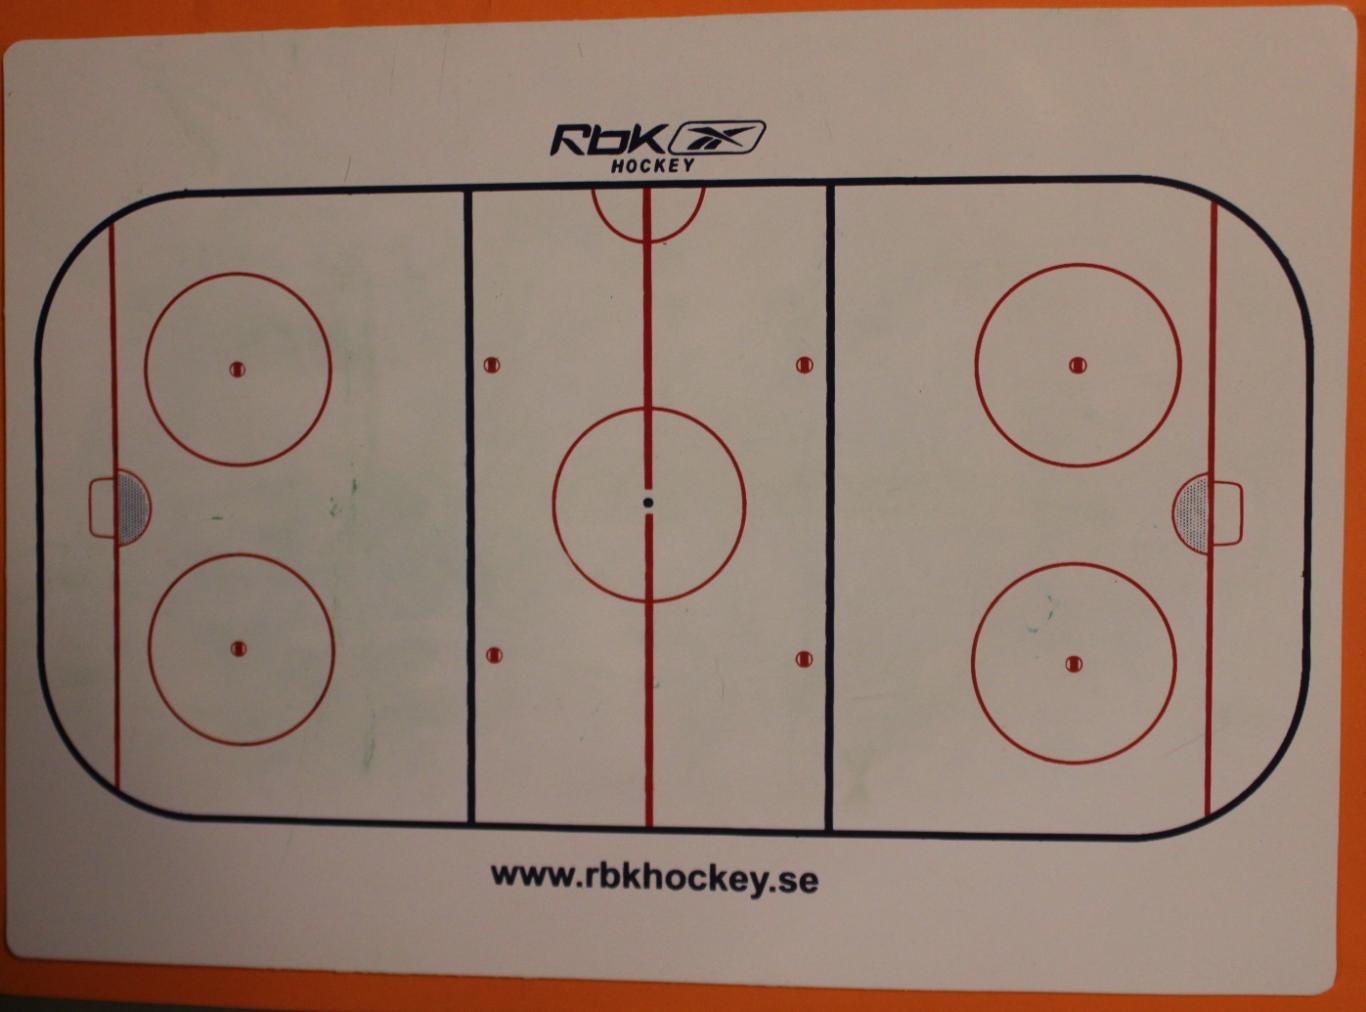 Хоккей. Пластиковая схема площадки для планшета